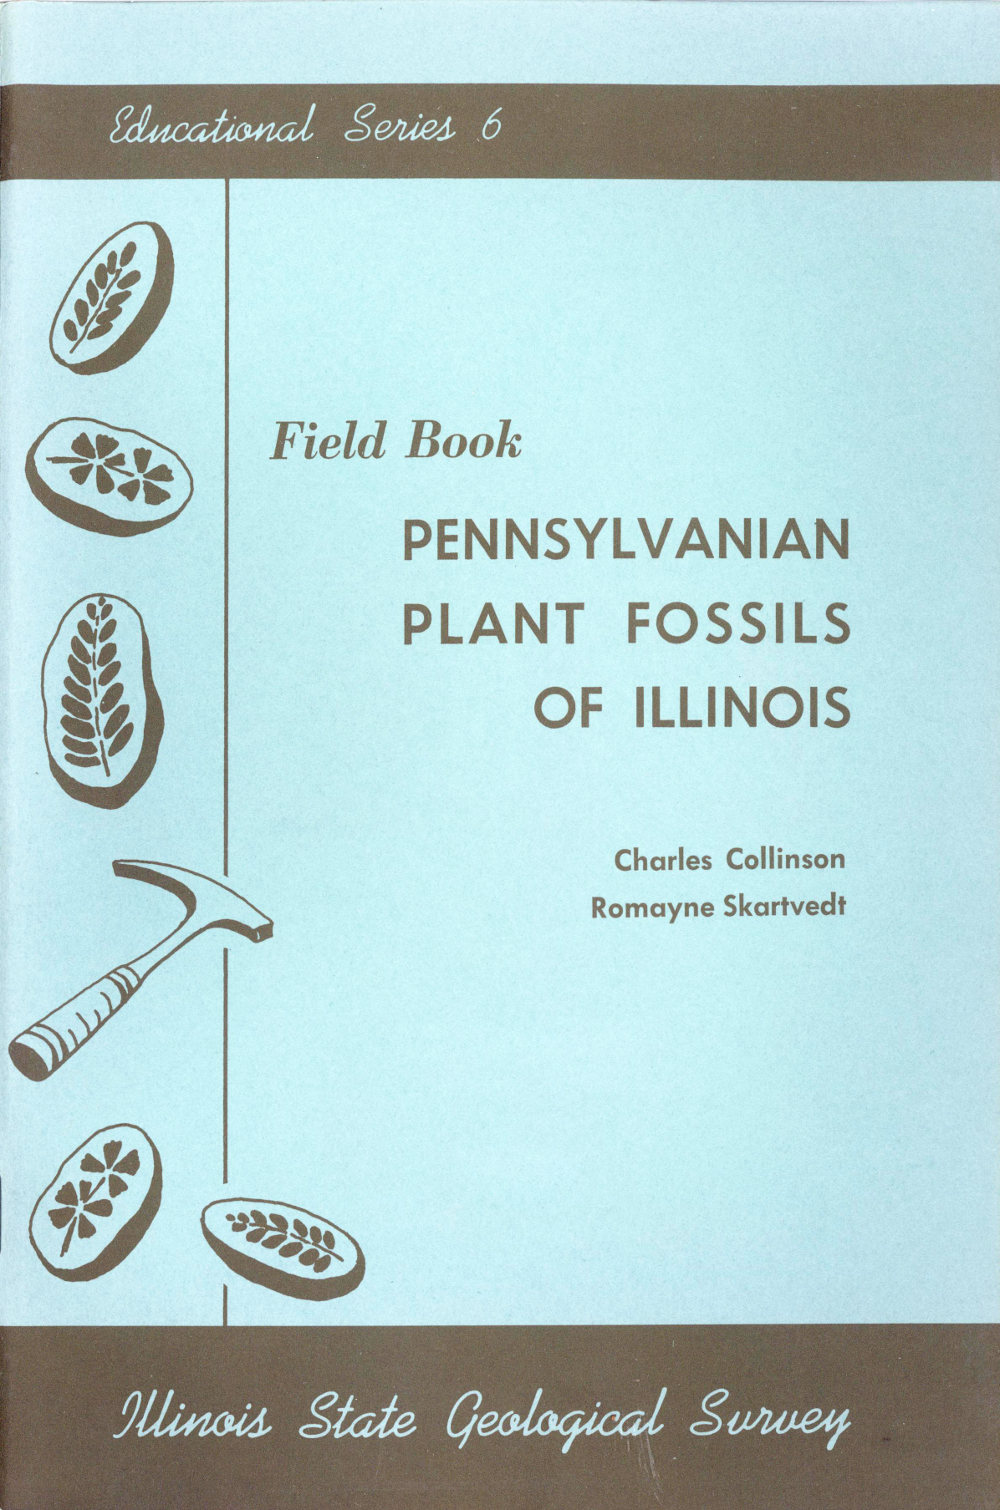 Pennsylvanian Plant Fossils of Illinois